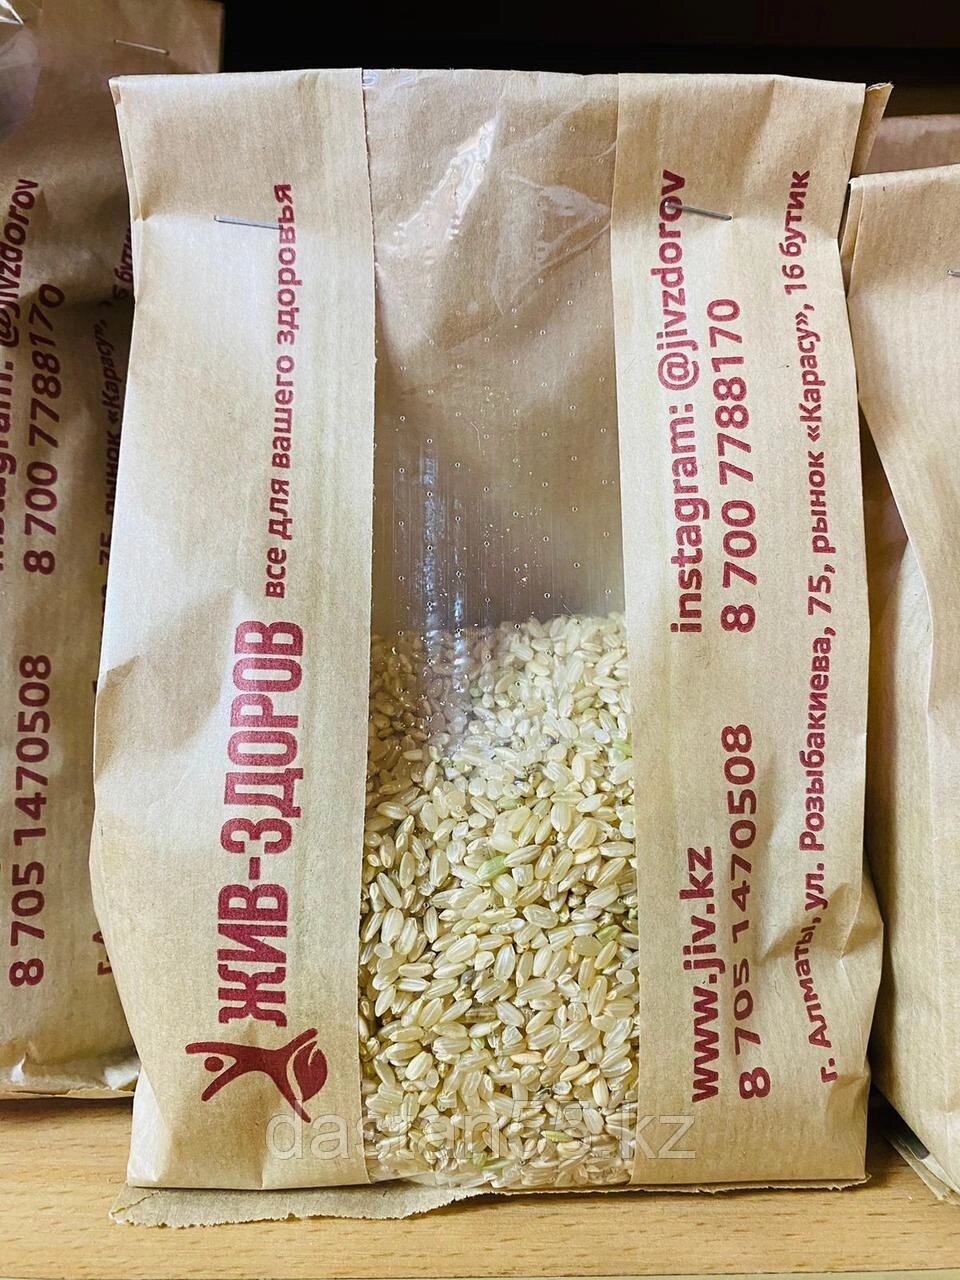 Рис бурый, 0,5 кг от компании "Жив-Здоров" - лавка натуральных продуктов - фото 1